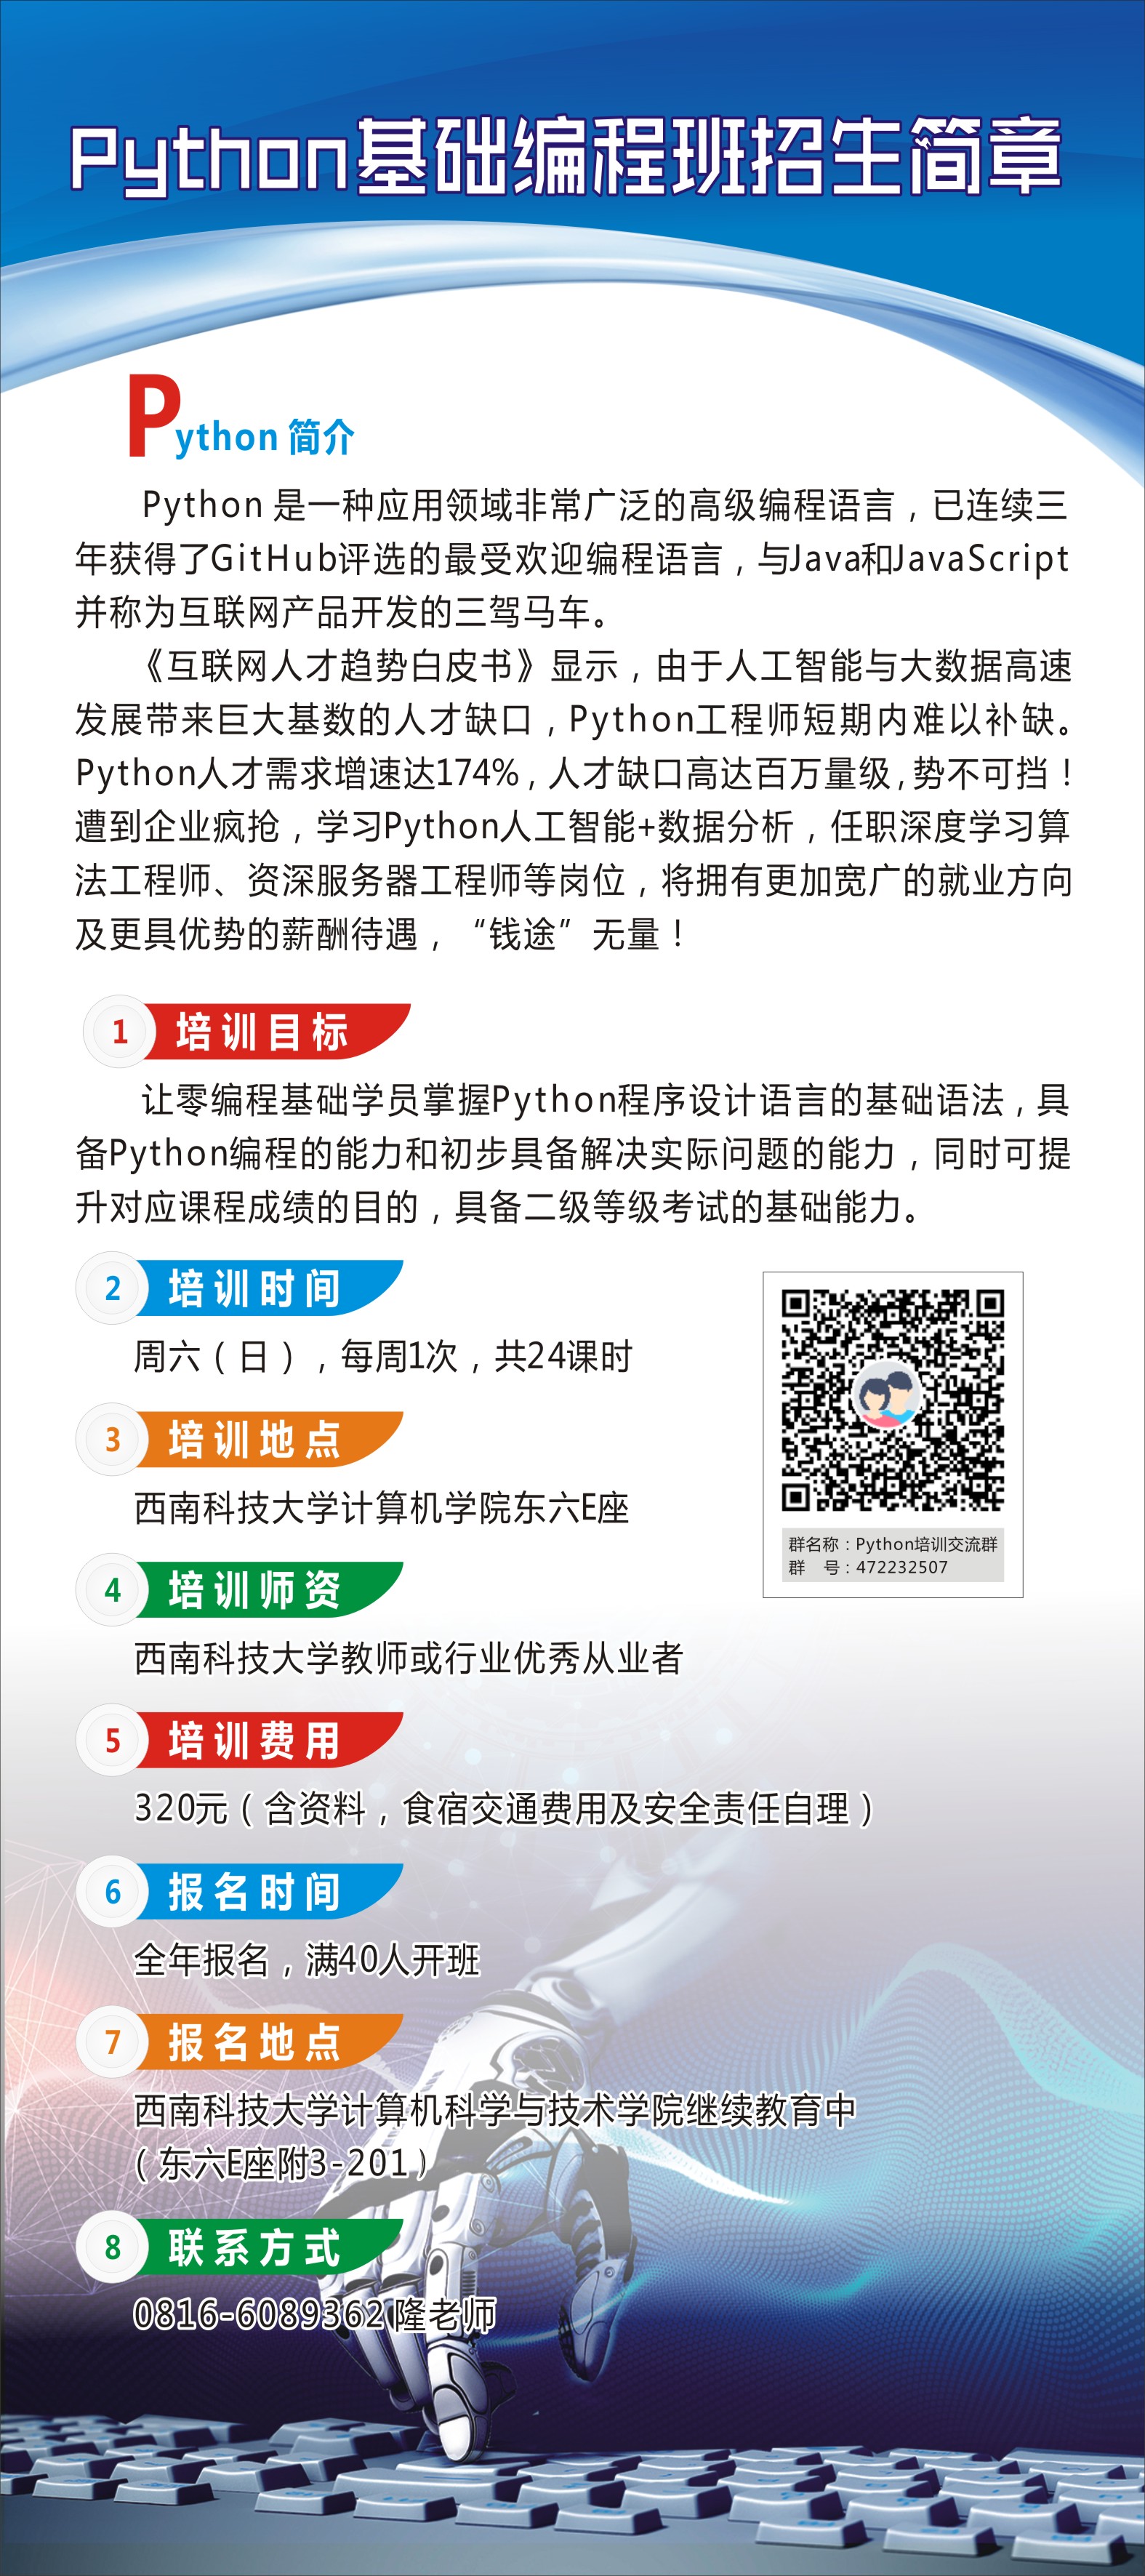 python基础编程班招生简章.jpg